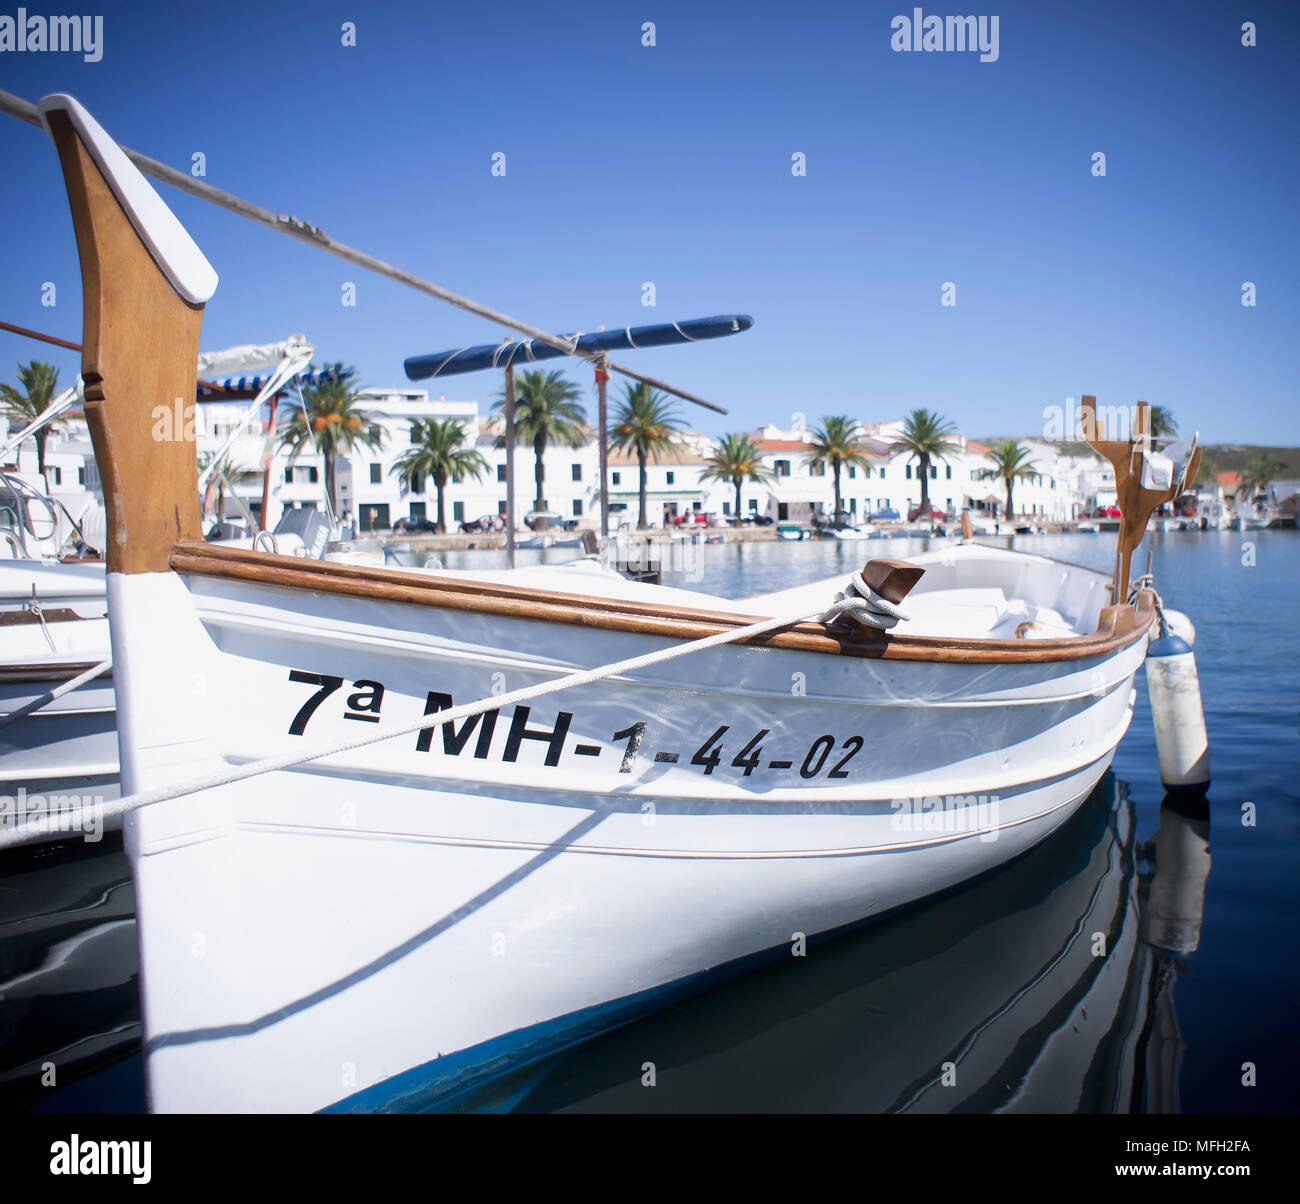 Menorca boat Stock Photo